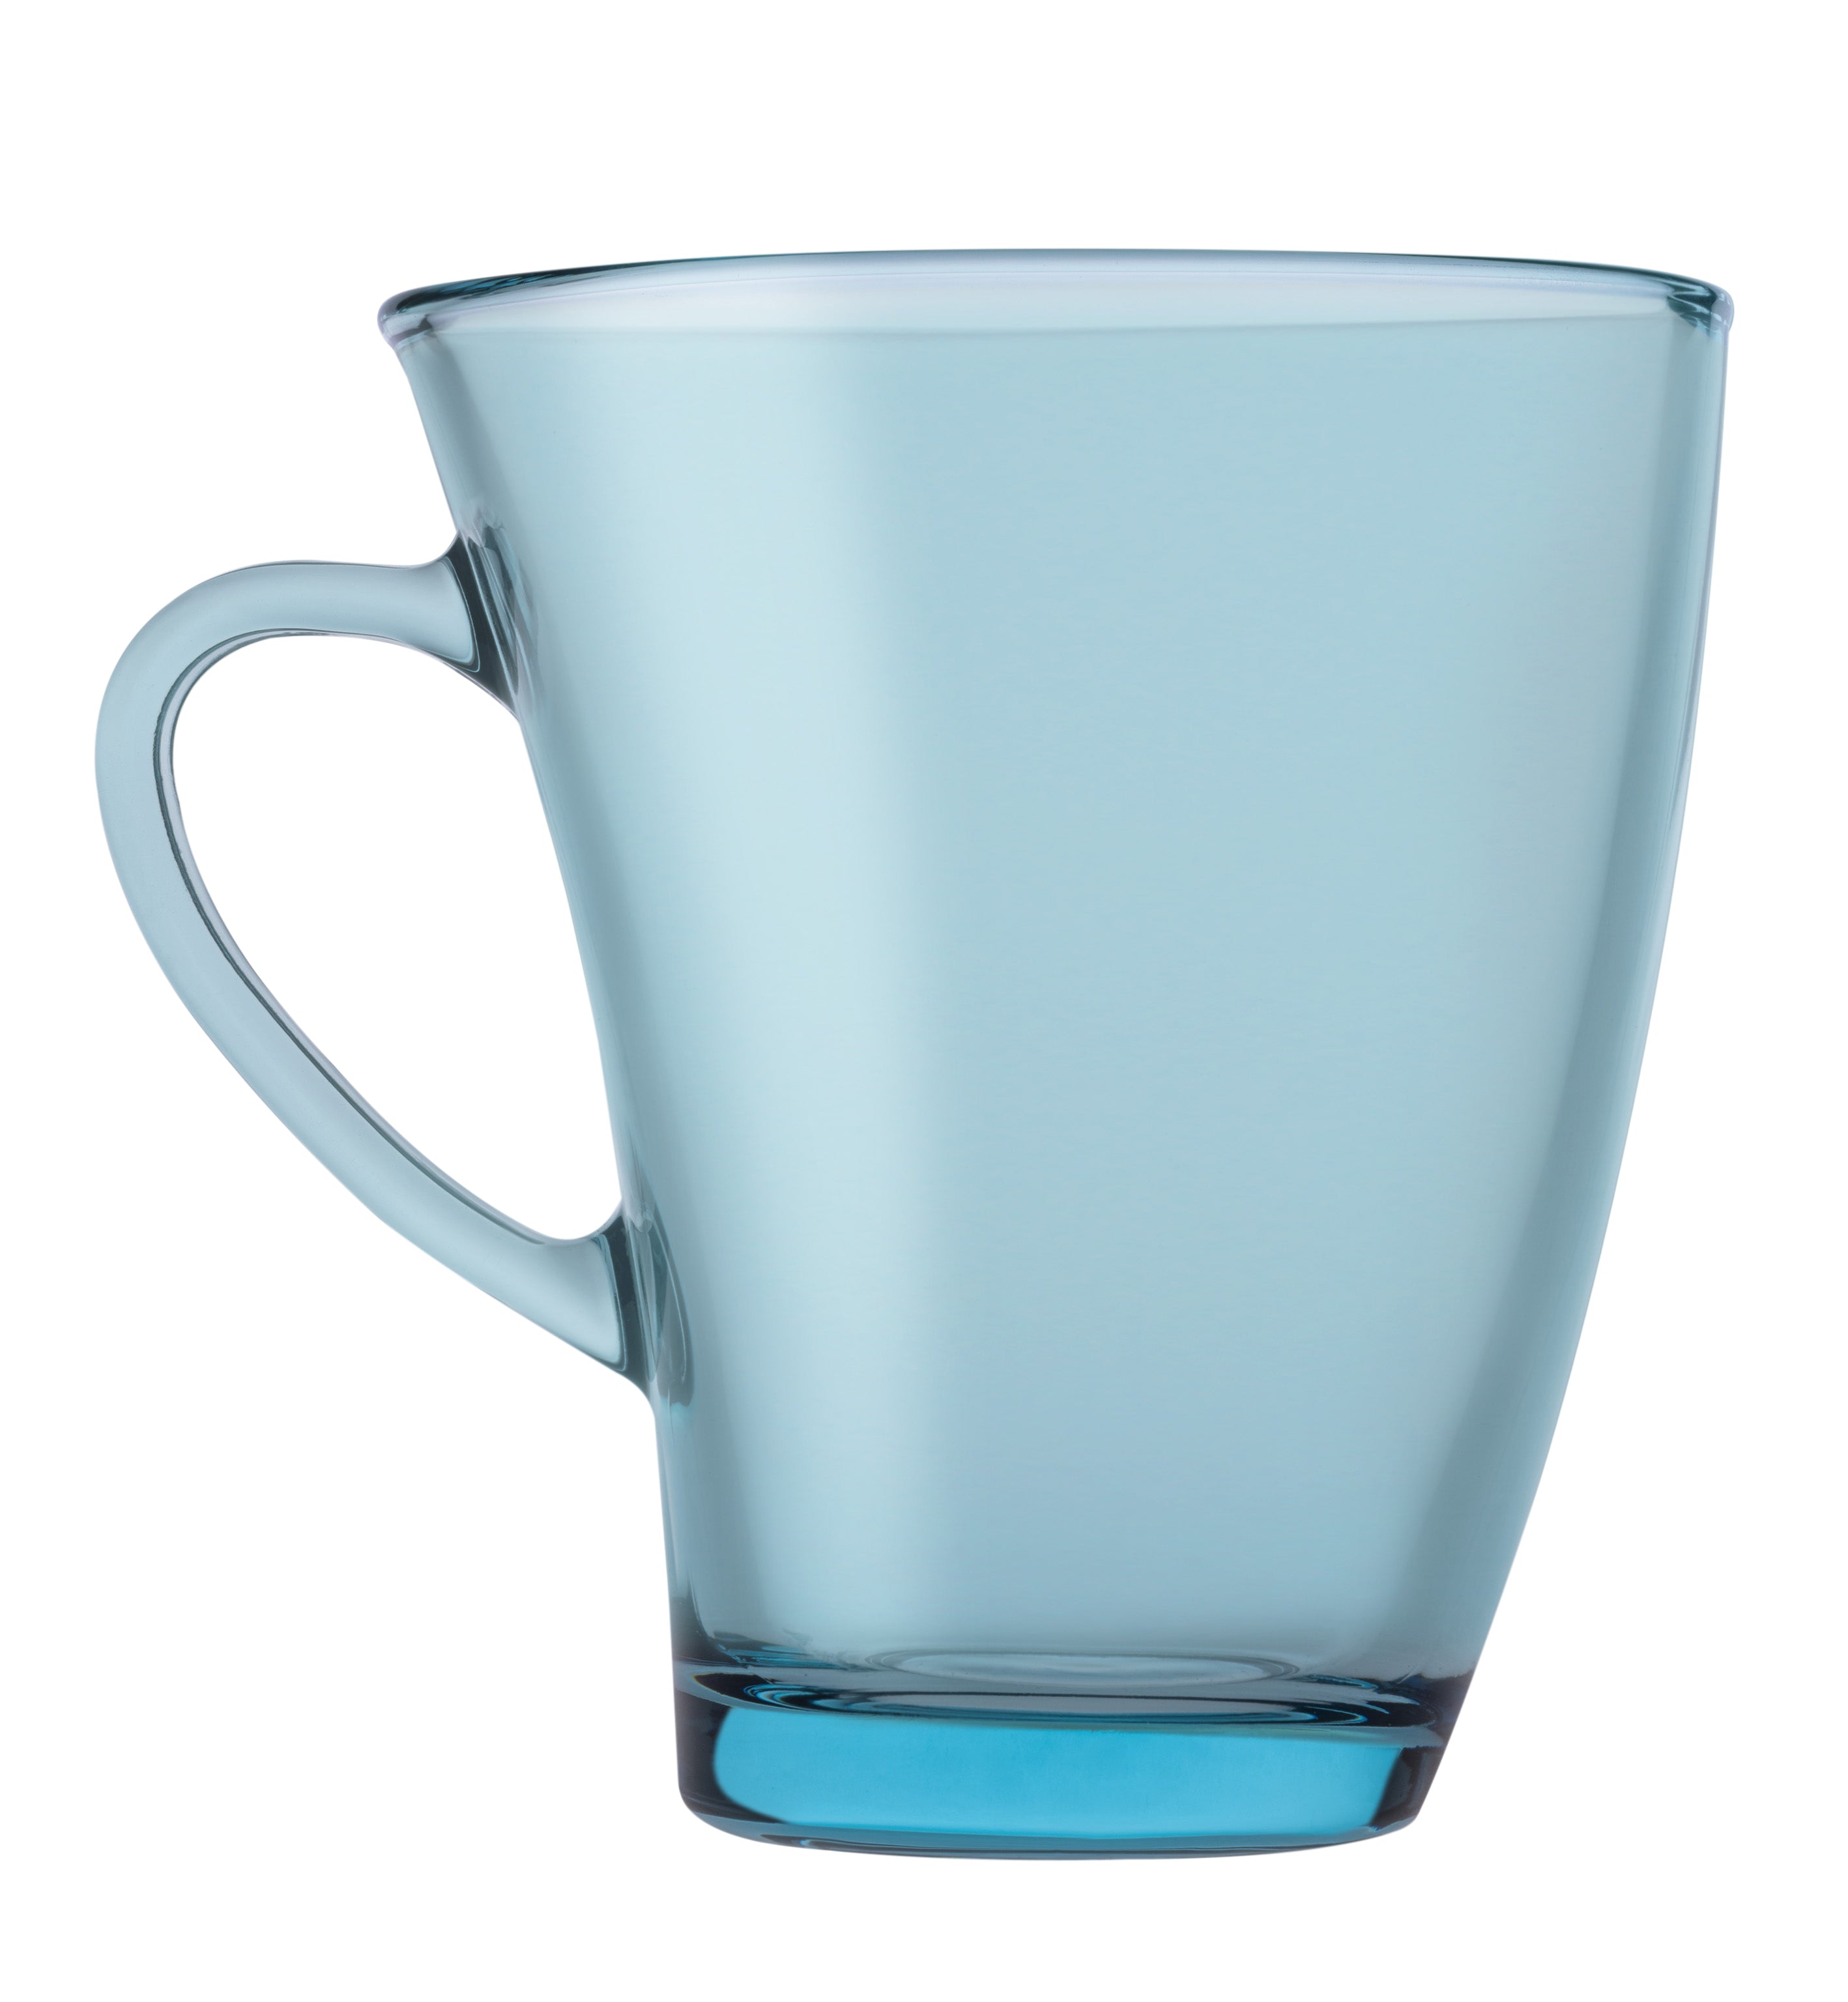 Pasabahce Penguen Mug - Turquoise, 170ml